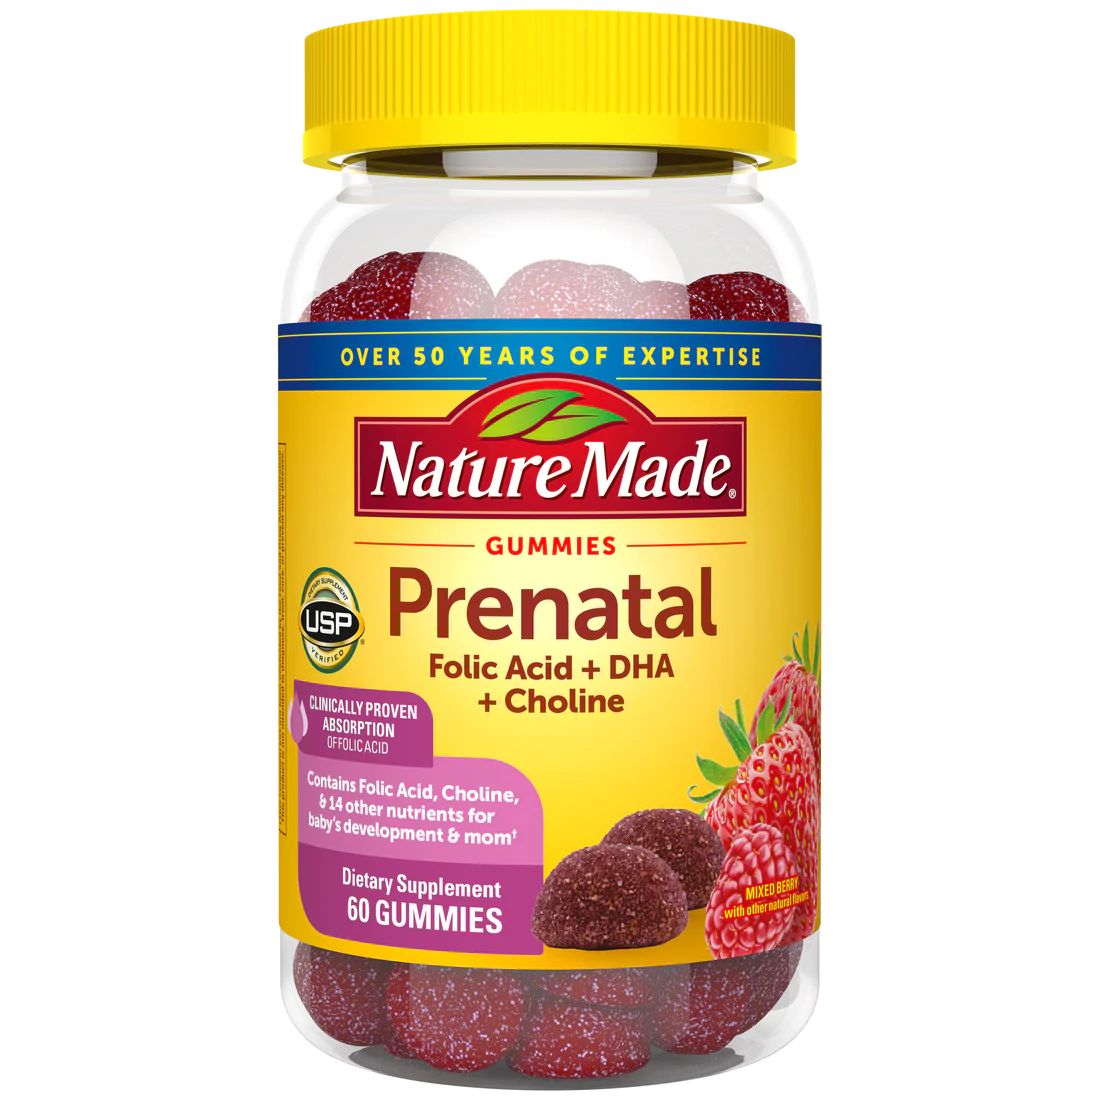 Prenatal & Postnatal Supplements